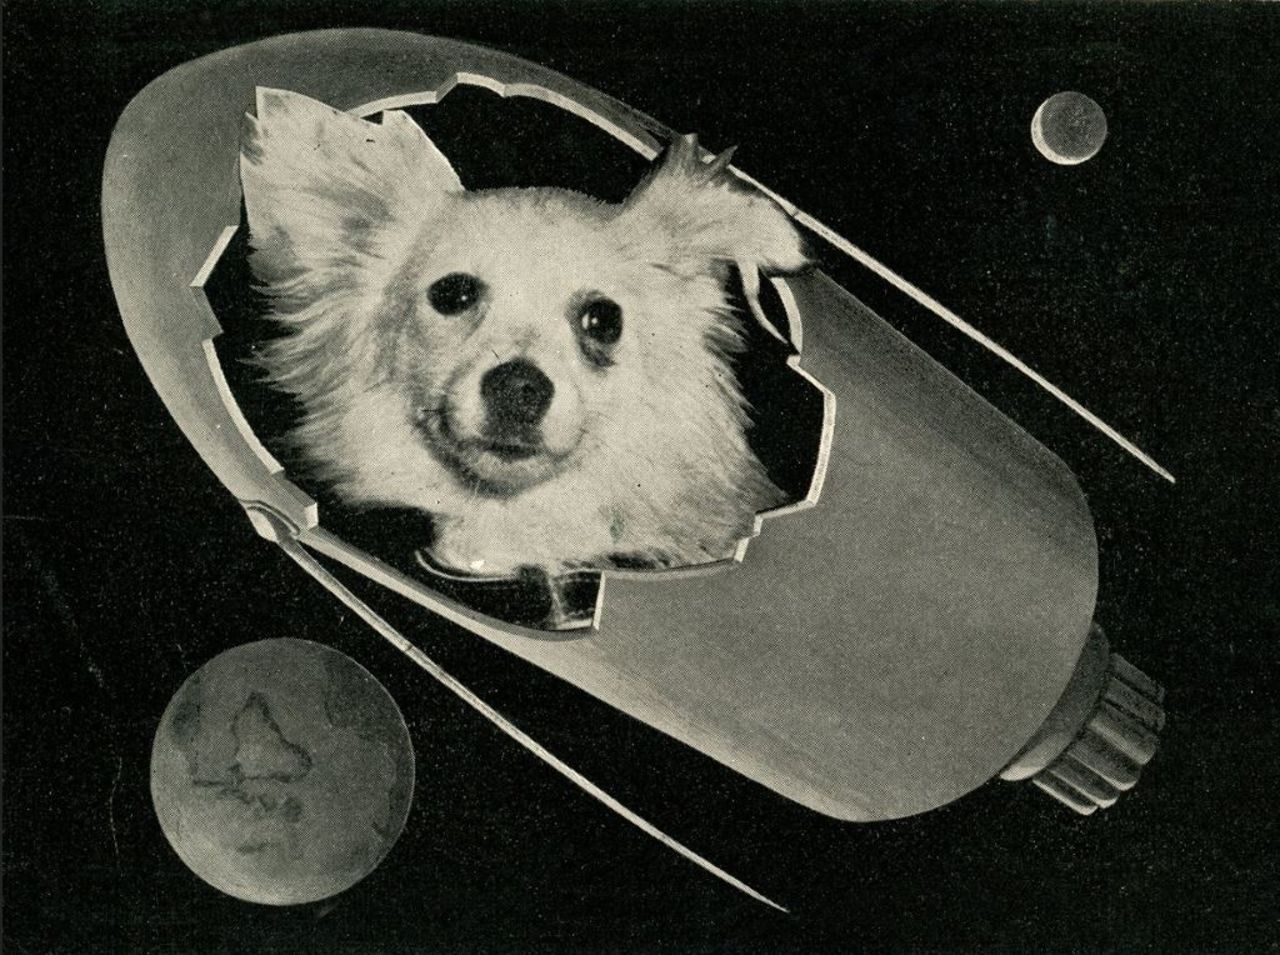 В каком году собаки полетели в космос